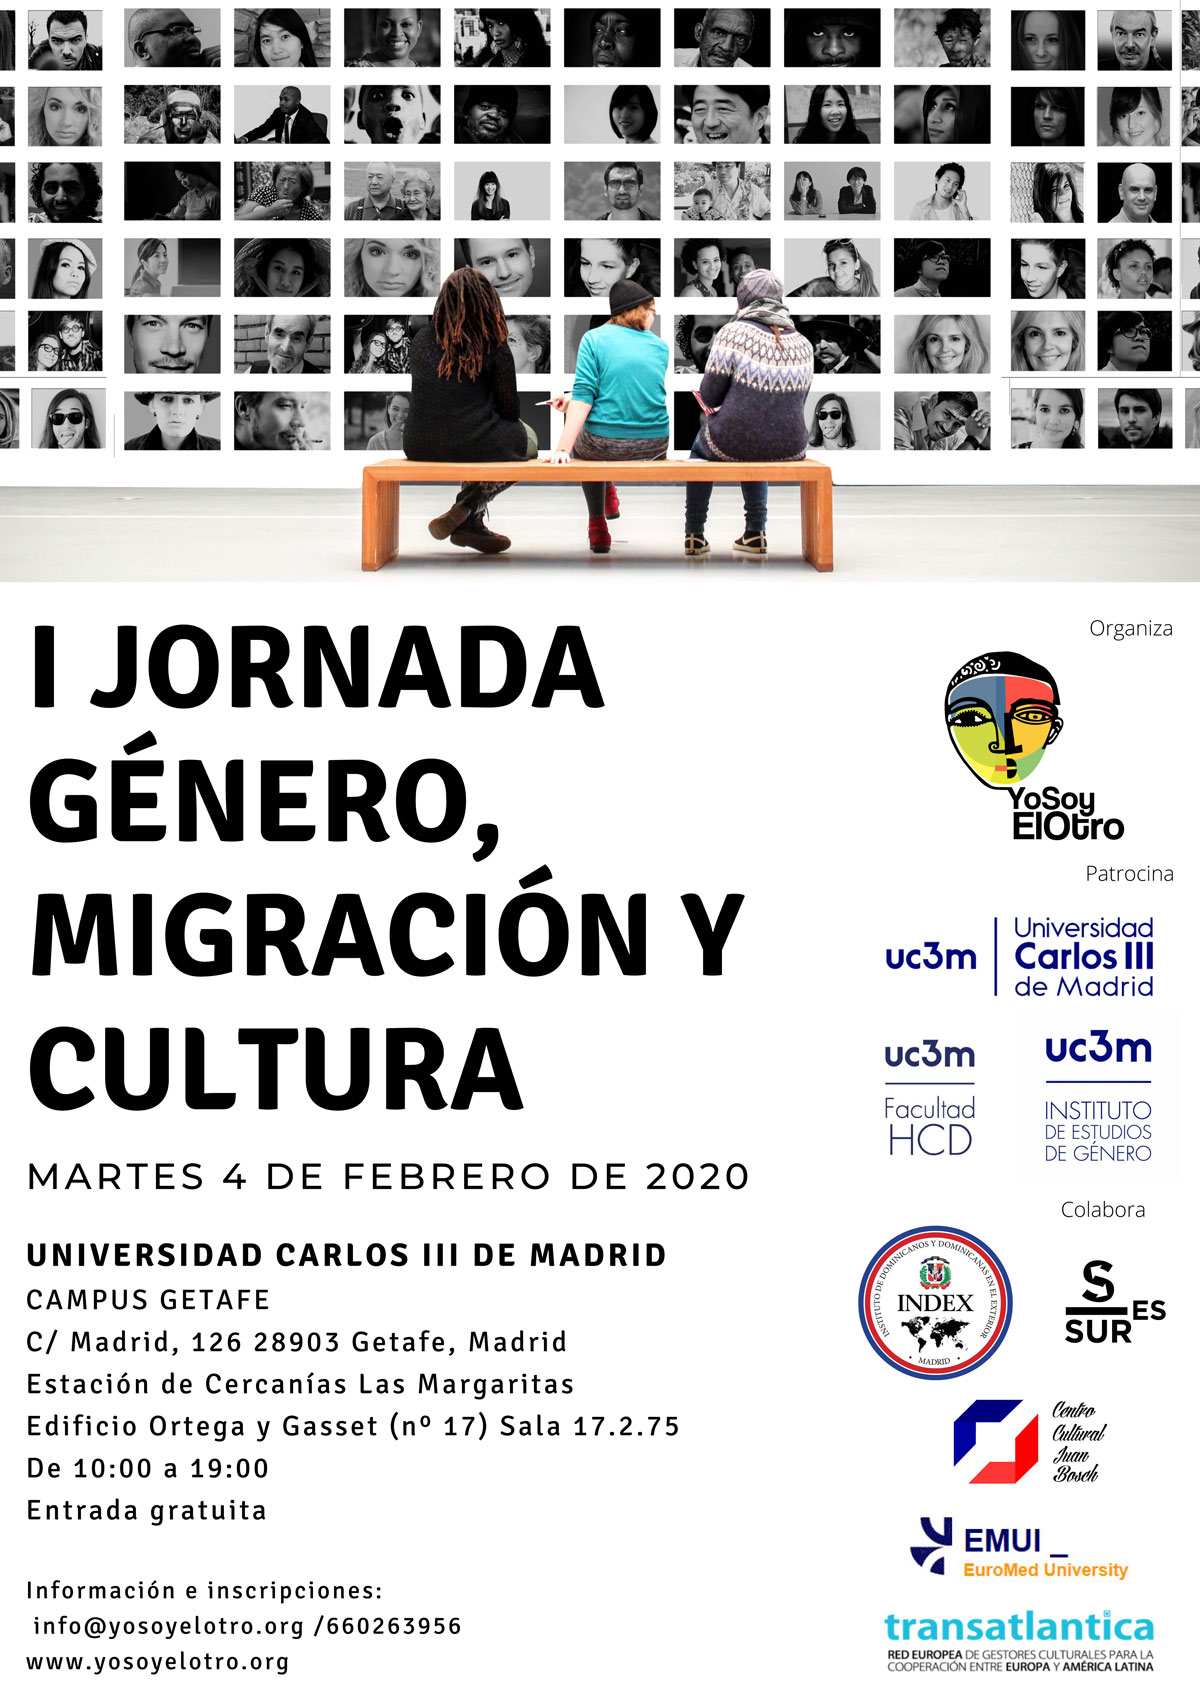 Jornada de Género, Migración y Cultura. | YoSoyElOtro